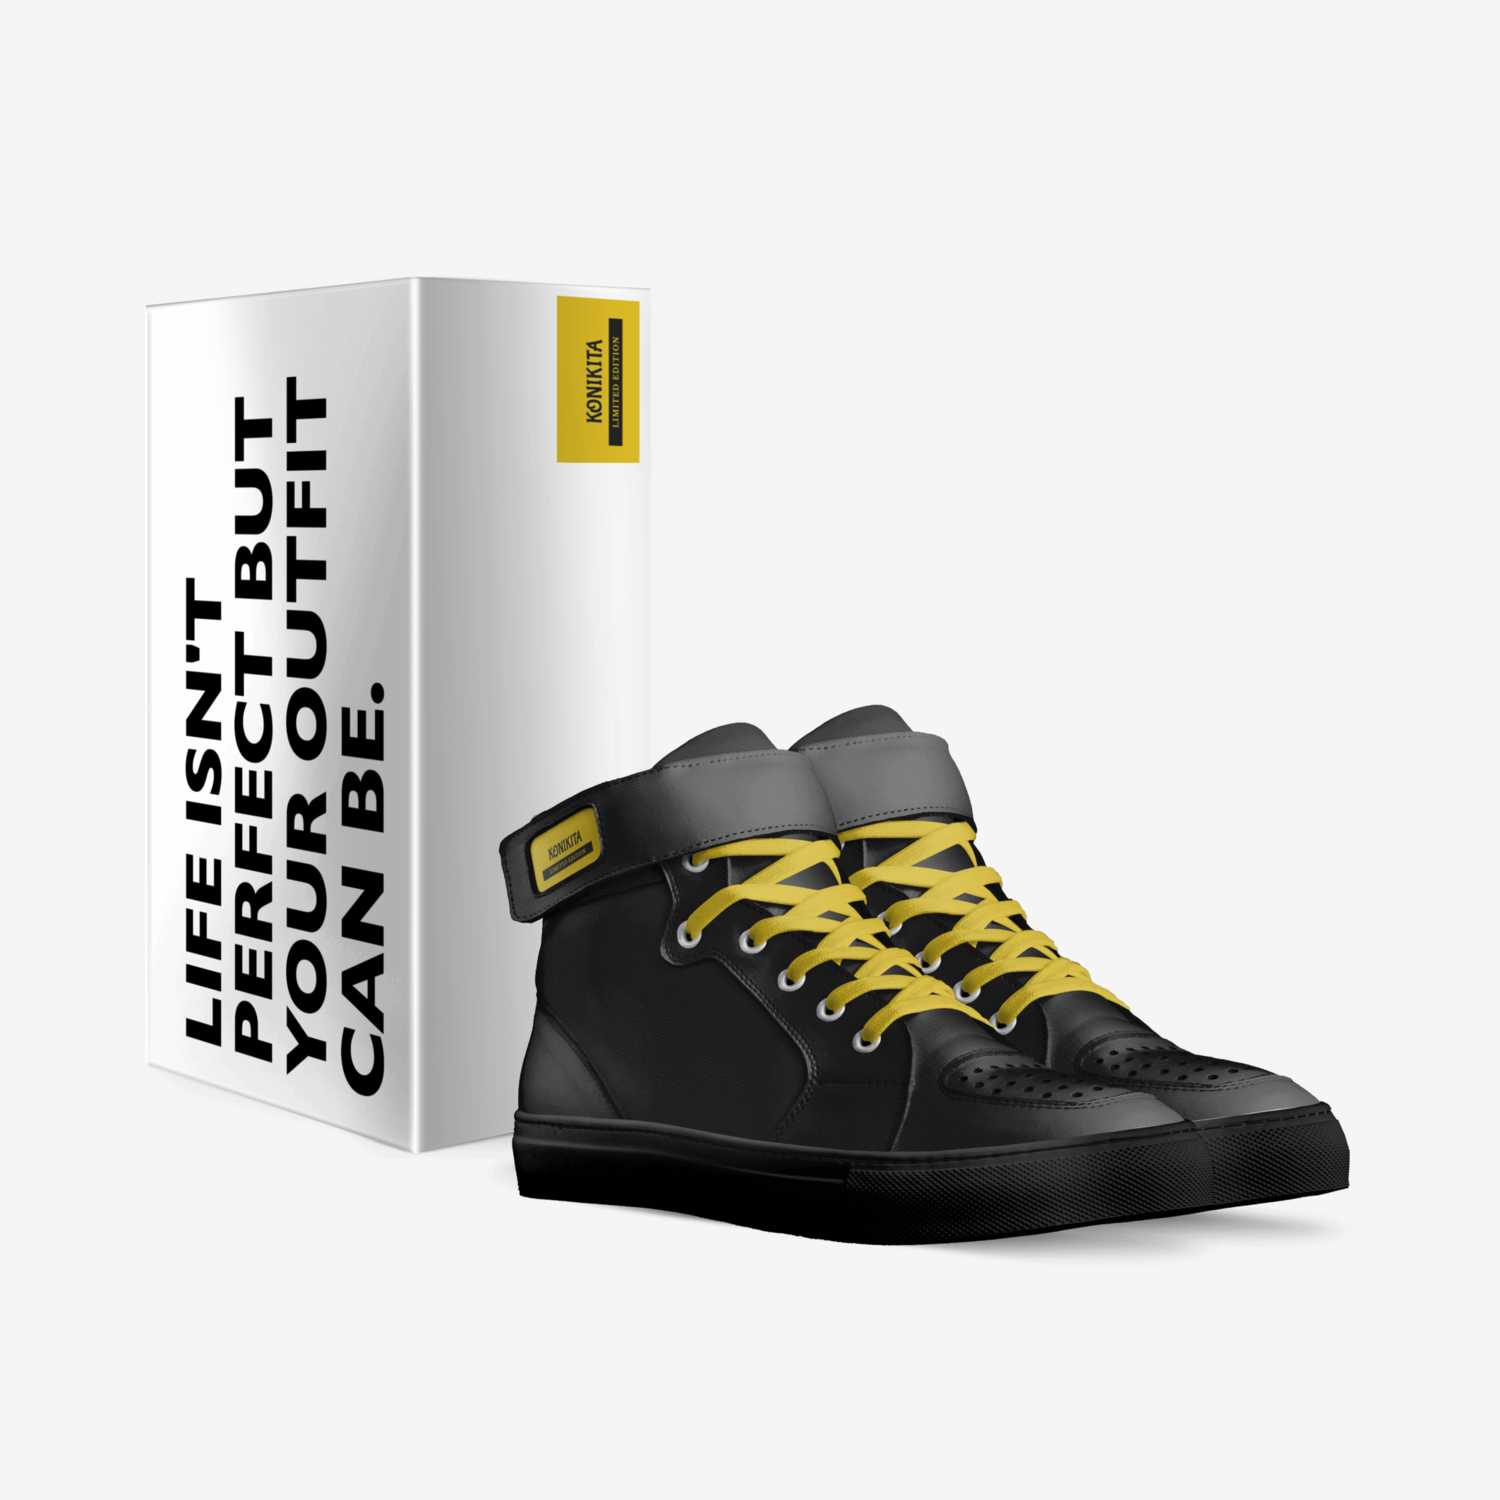 KONIKITA custom made in Italy shoes by Konikita Canada | Box view